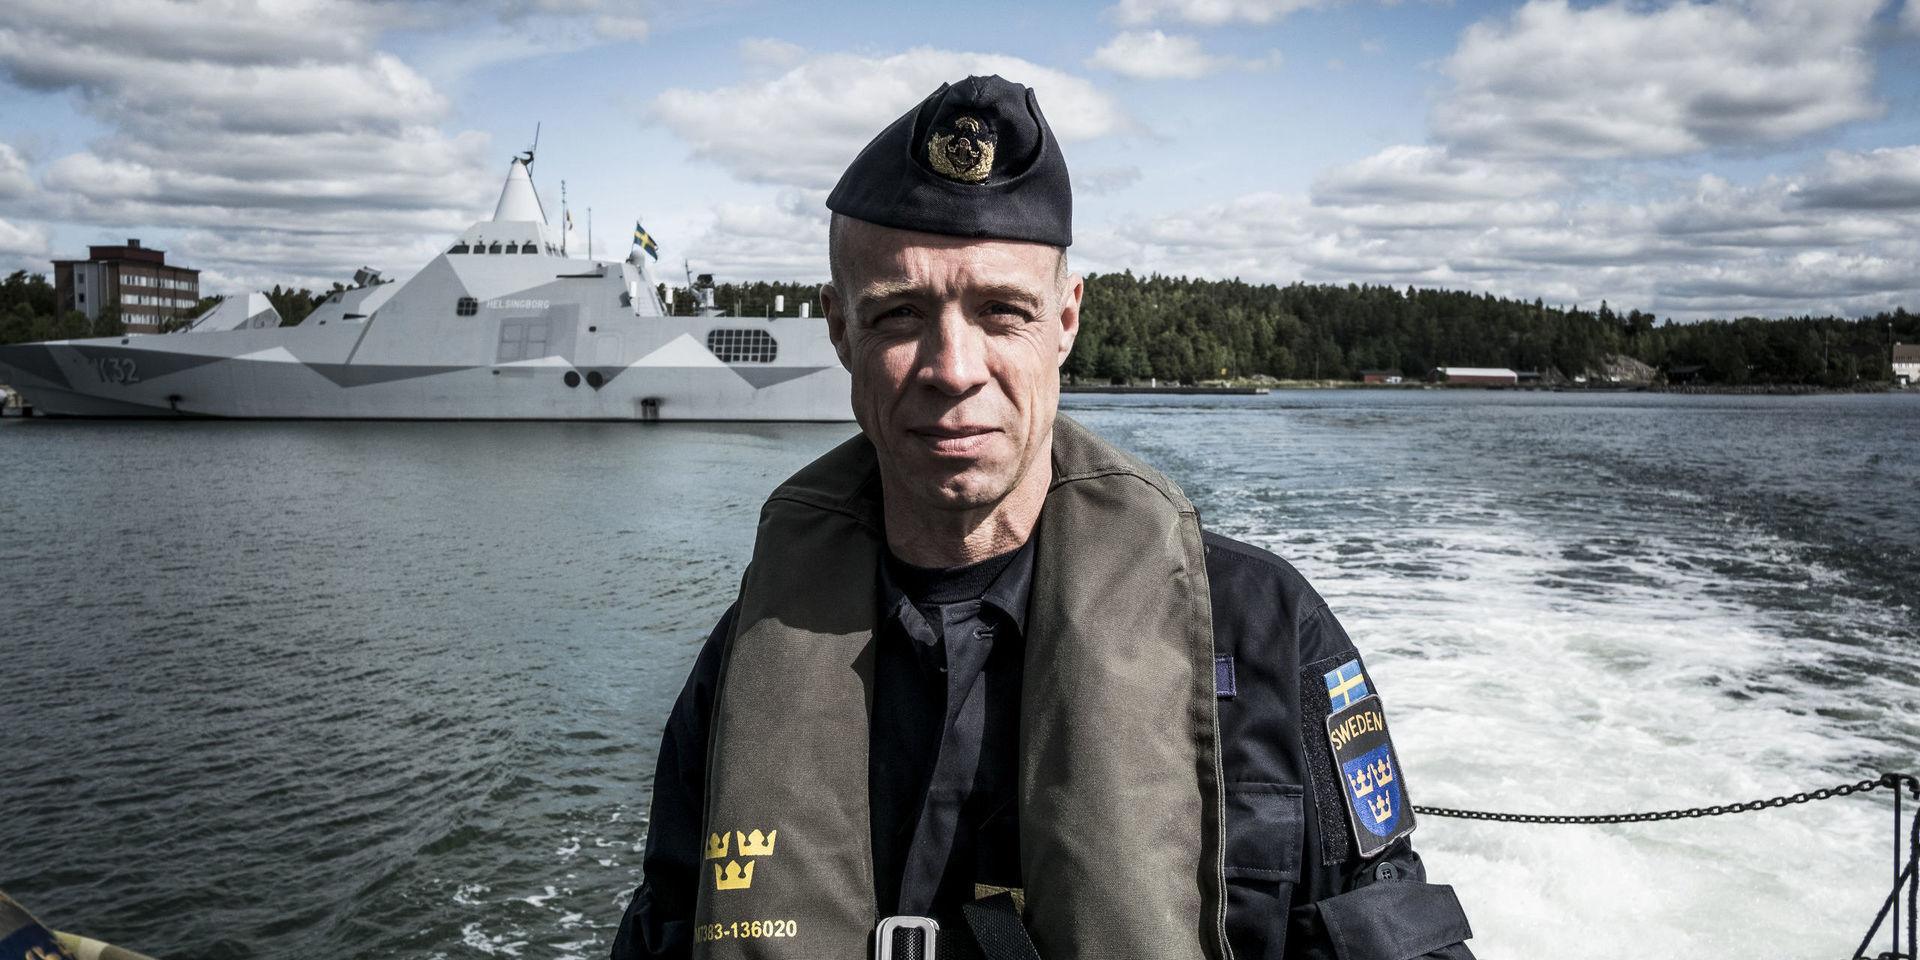 Marinchef Jens Nykvist hoppas på förstärkningar. I bakgrunden syns en korvett av Visbyklass – som tillsammans med ubåtar är det mest potenta som finns att tillgå inom den svenska flottan. Några korvetter eller andra slagkraftigare stridsfartyg finns dock inte stationerade på västkusten.